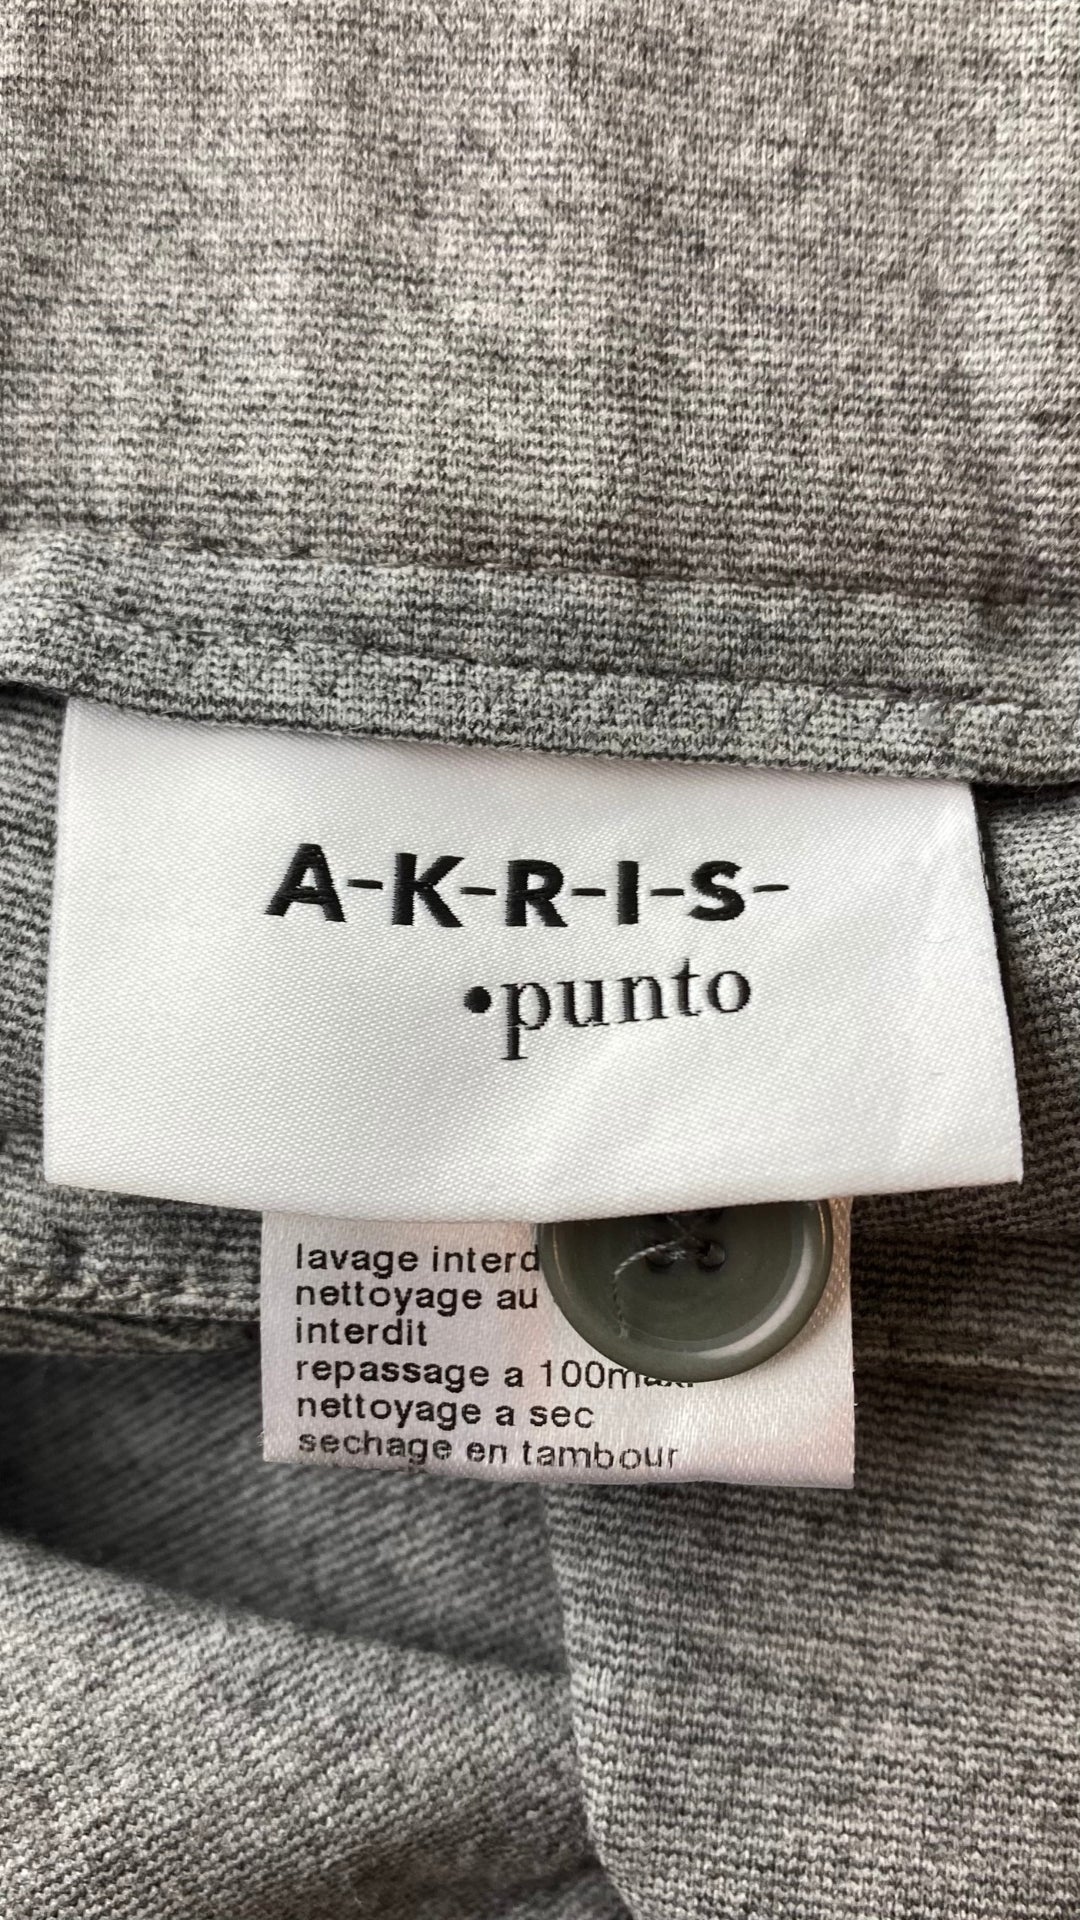 Pantalon luxueux extensible gris chiné Akris Punto, taille 34. Vue de l'étiquette de marque.